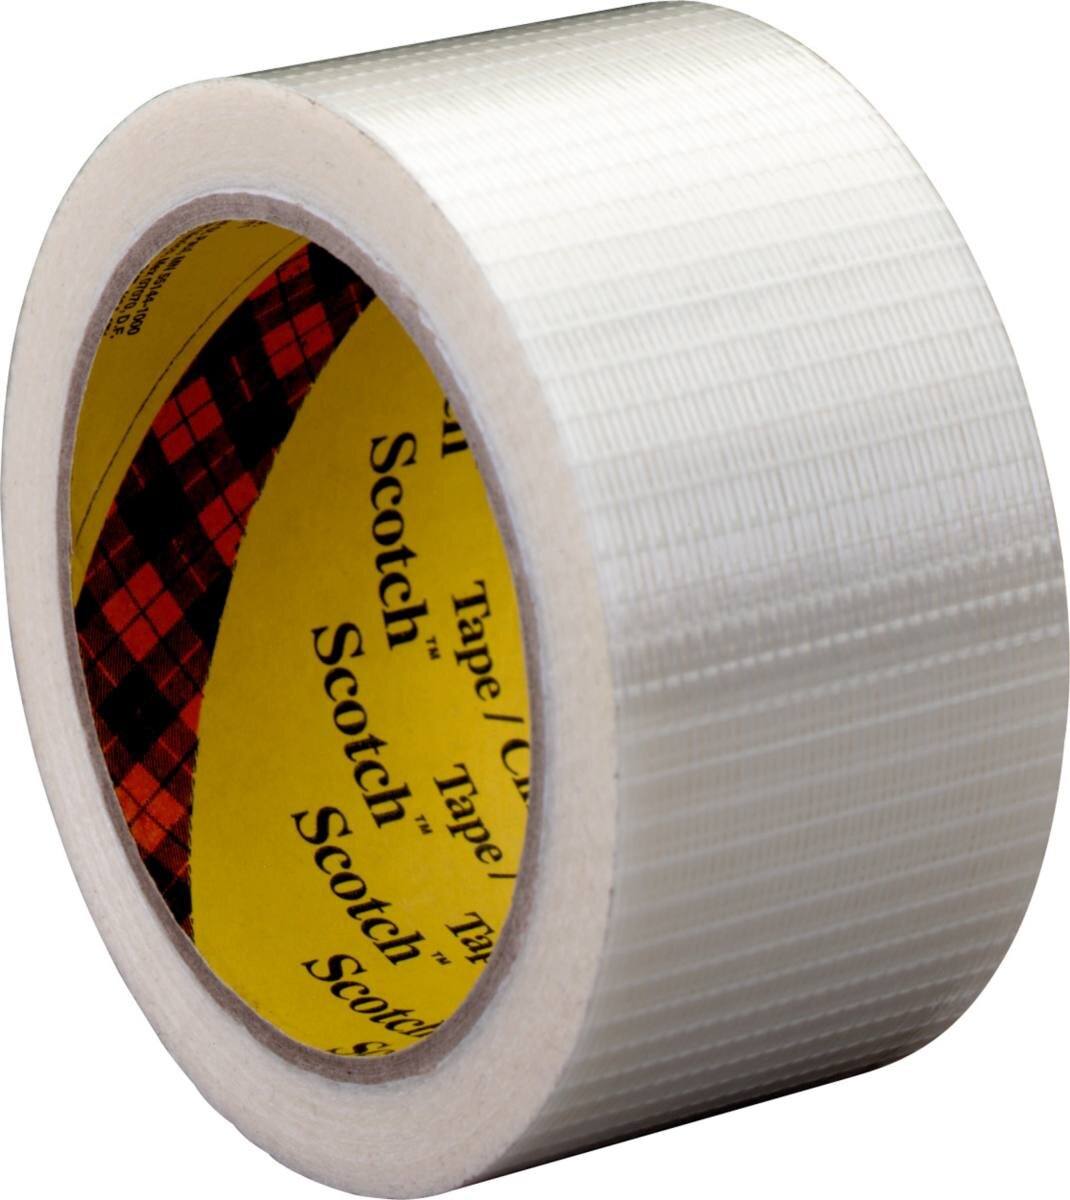 3M Scotch filament tape 8959, transparent, 38 mm x 50 m, 0.145 mm